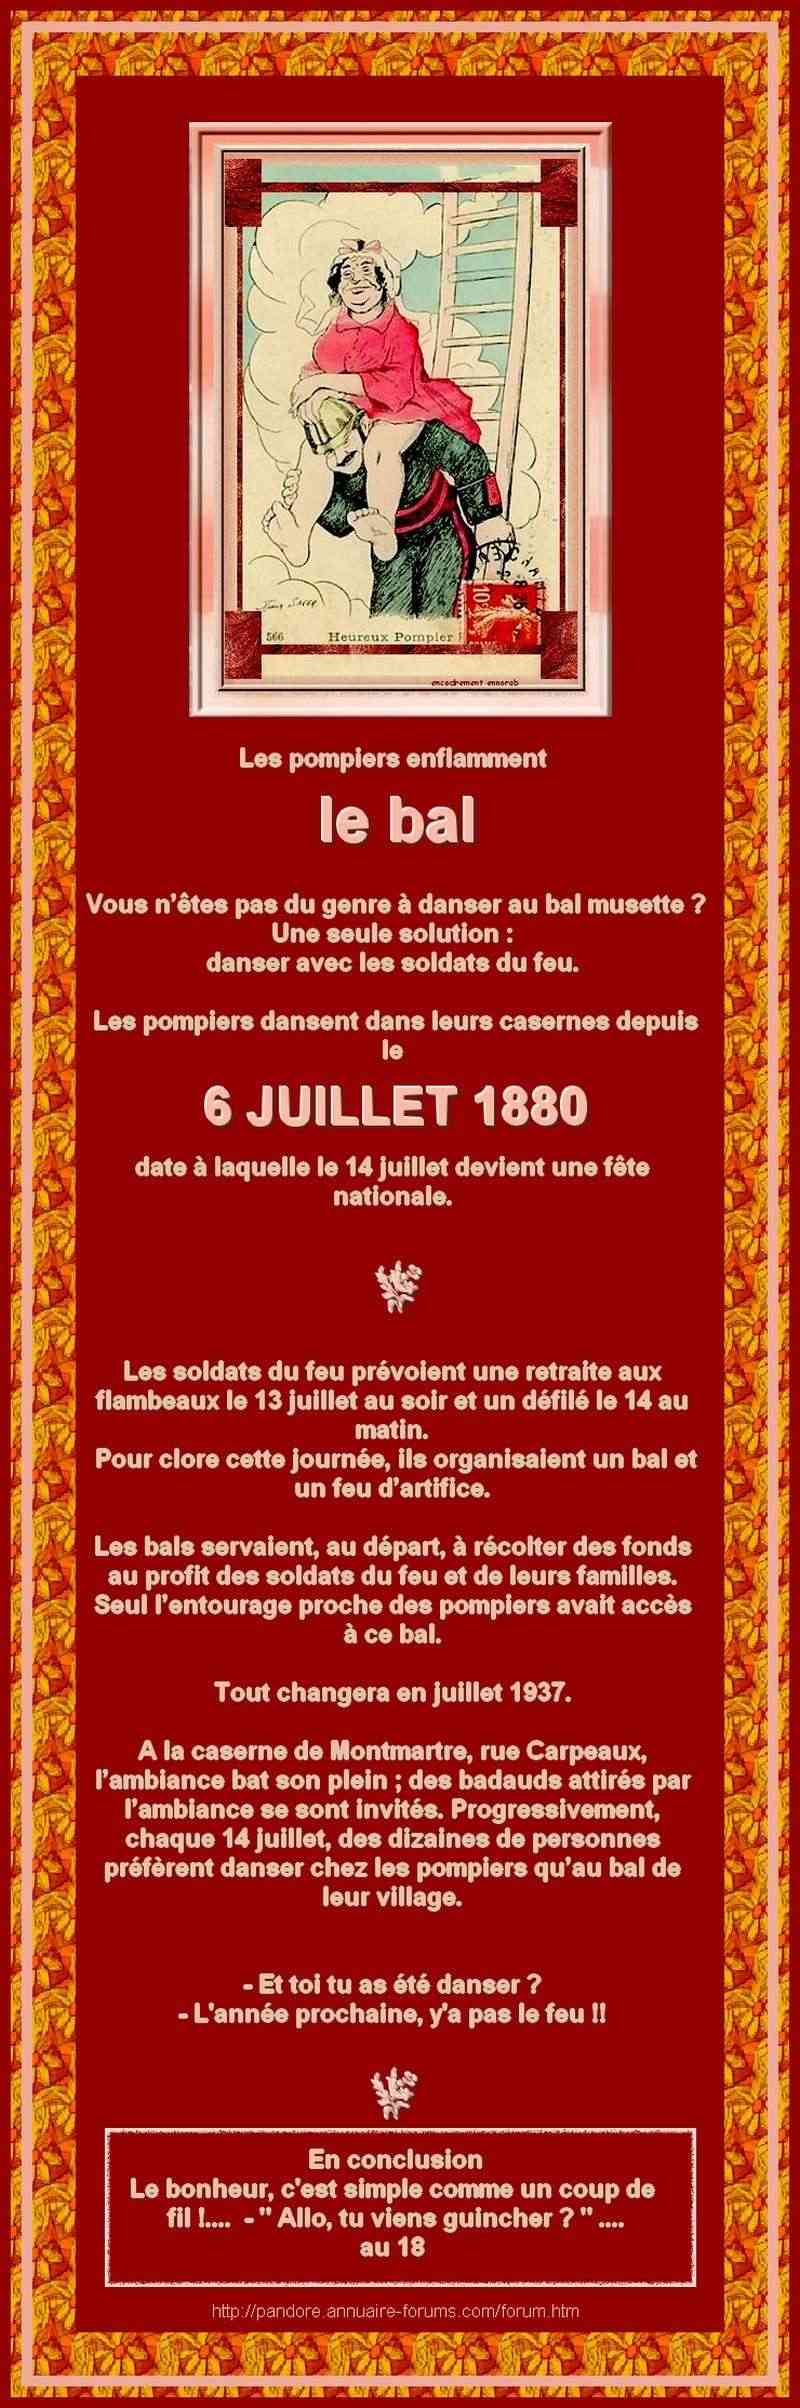 FRANCE - LE BAL DES POMPIERS DATE DE 1880 504_0027